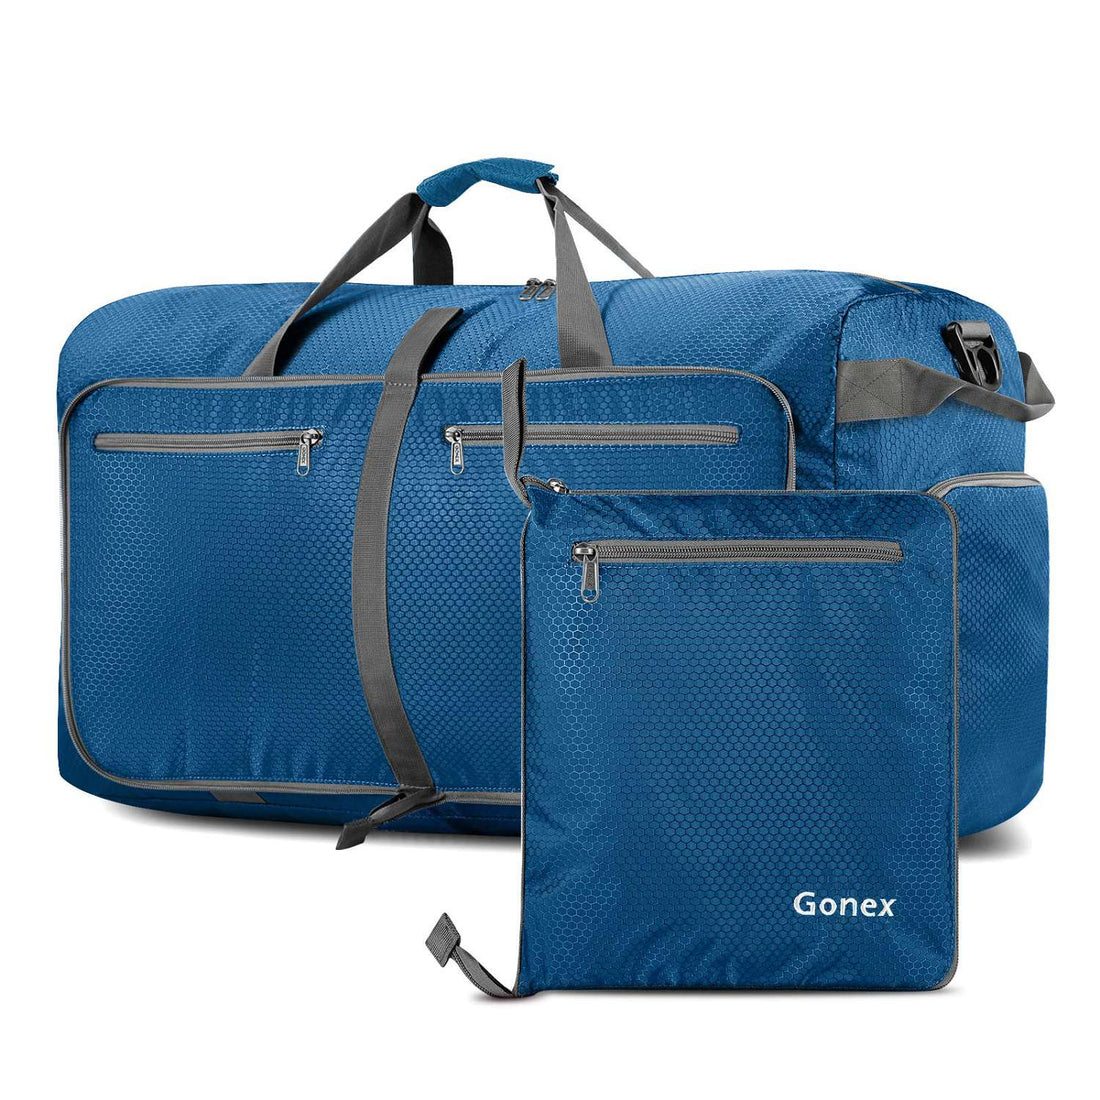 Gonex 100L foldable travel duffle bag